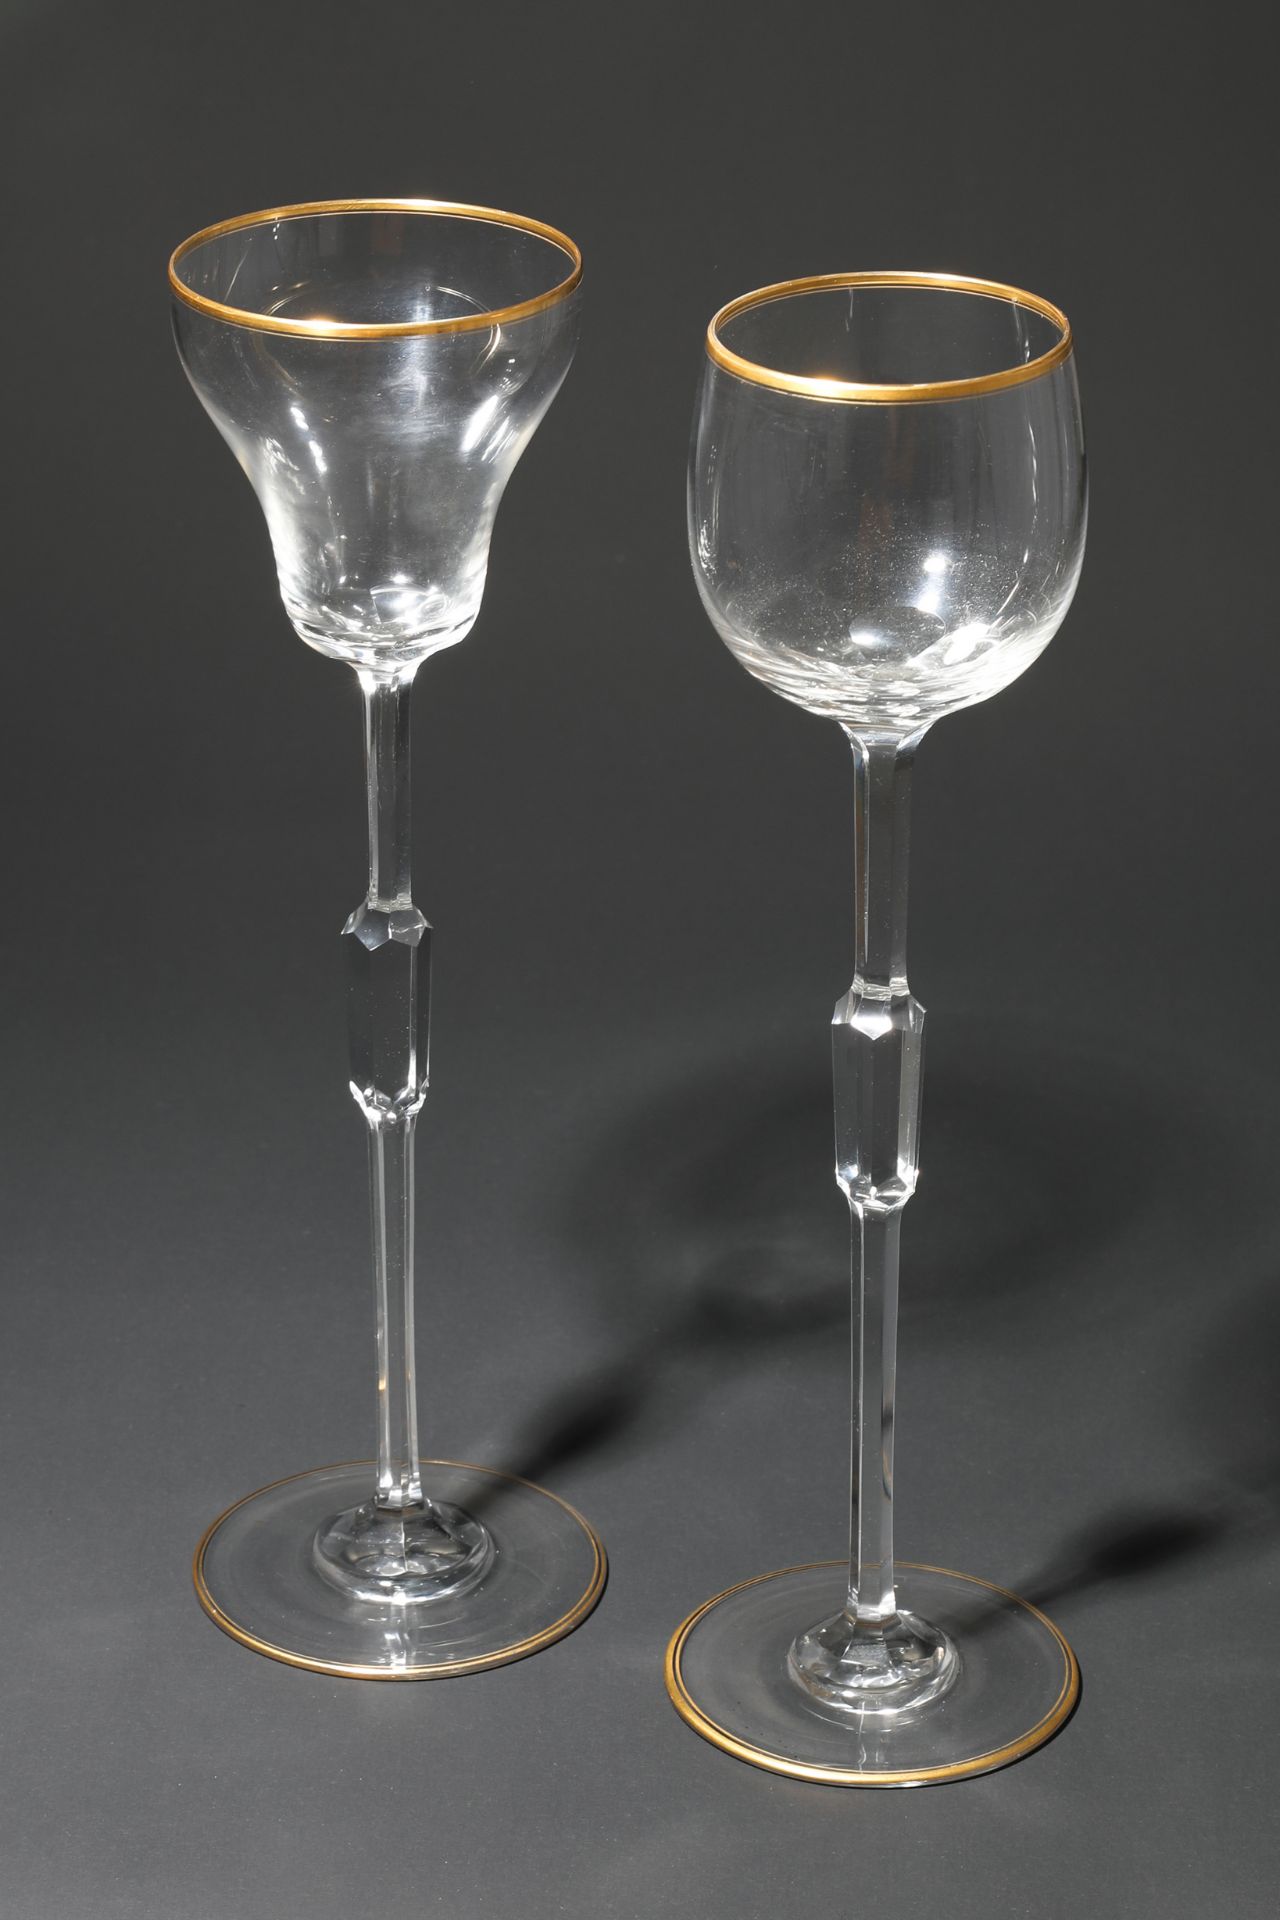 Siegfried Haertel, Josephinenhütte, 2 wine glasses shape 989